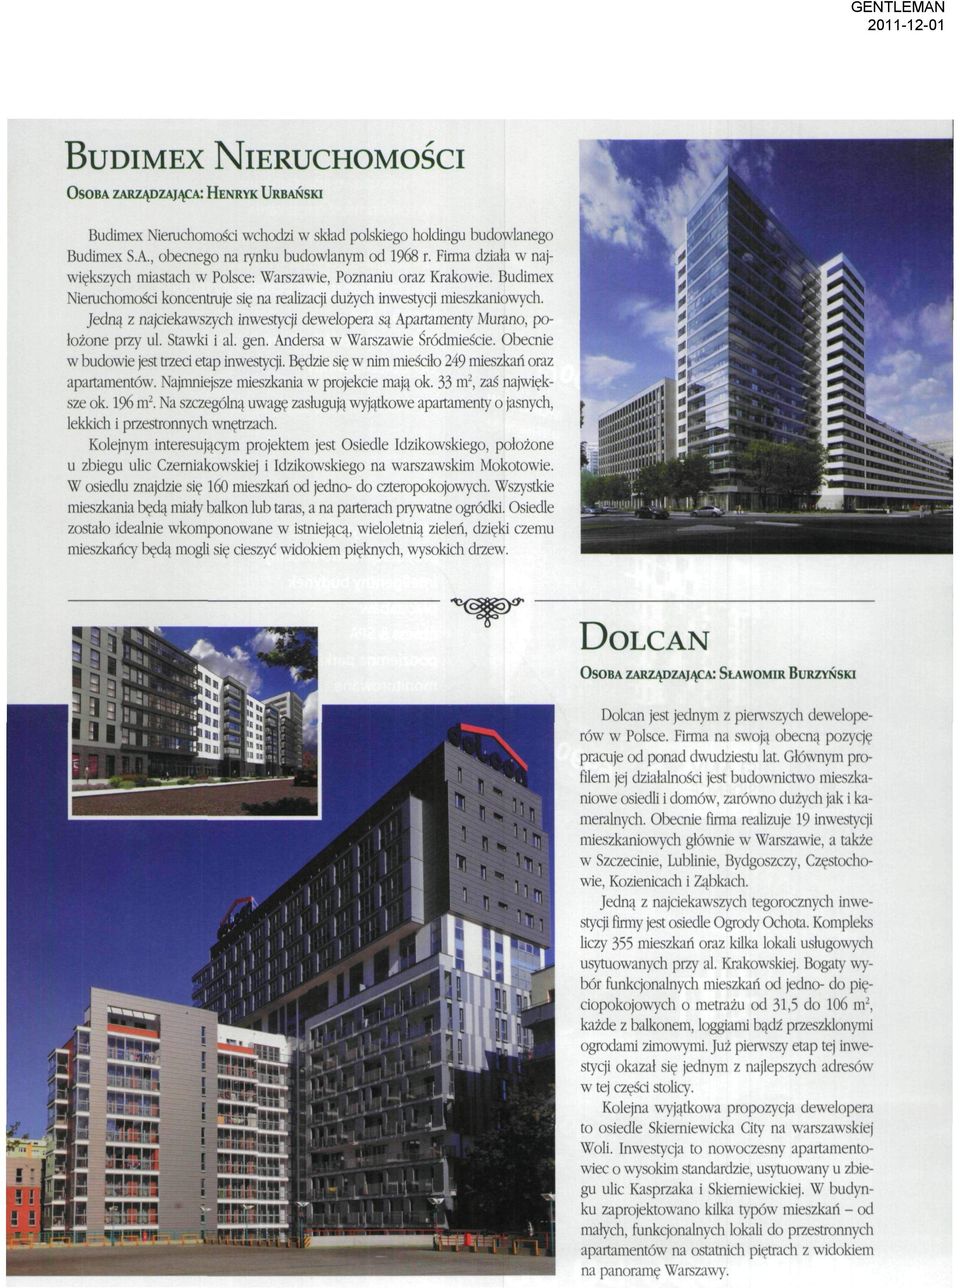 Jedną z najciekawszych inwestycji dewelopera są Apartamenty Murano, położone przy ul. Stawki i a1, gen. Andersa w Warszawie Śródmieście. Obecnie w budowie jest trzeci etap inwestycji.